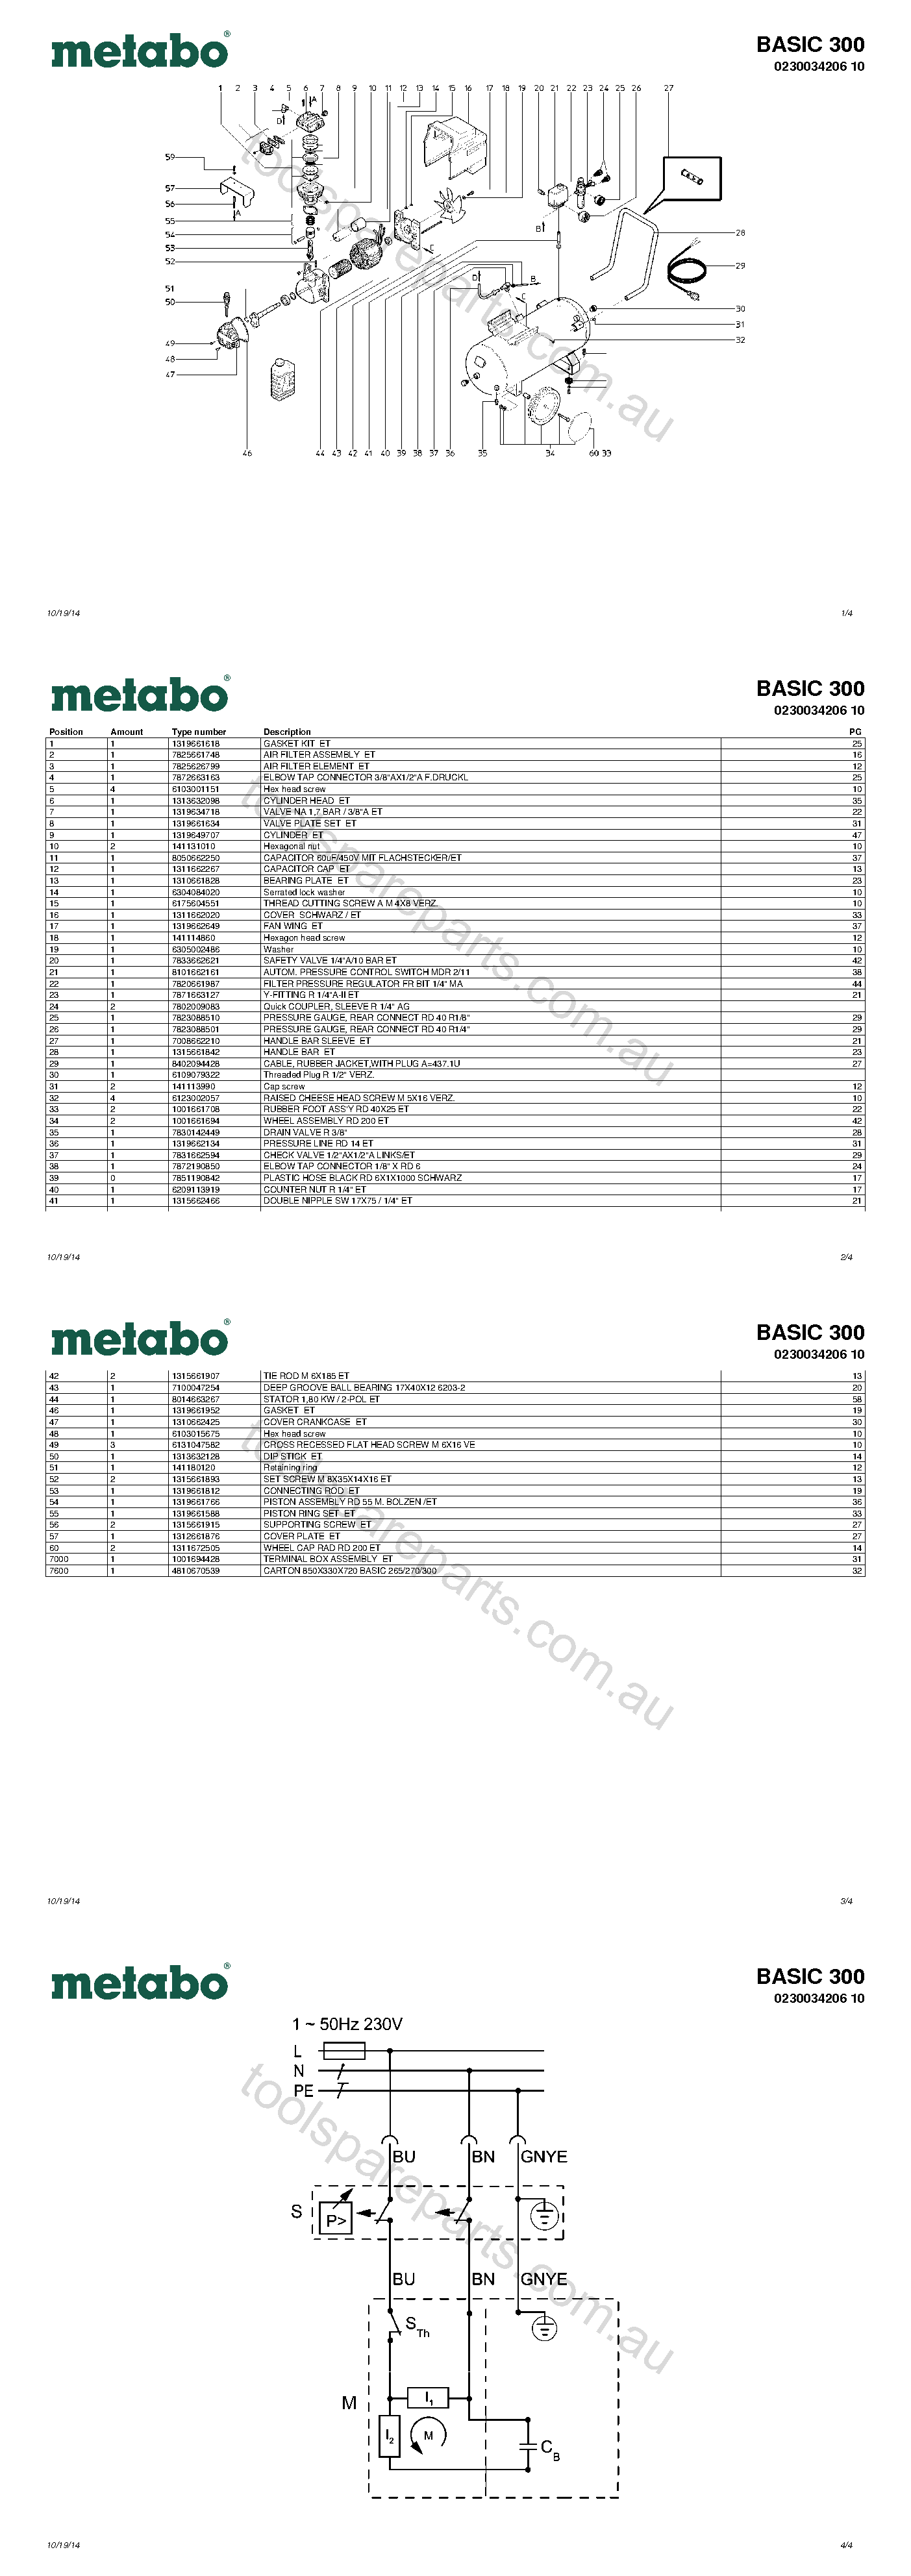 Metabo BASIC 300 0230034206 10  Diagram 1